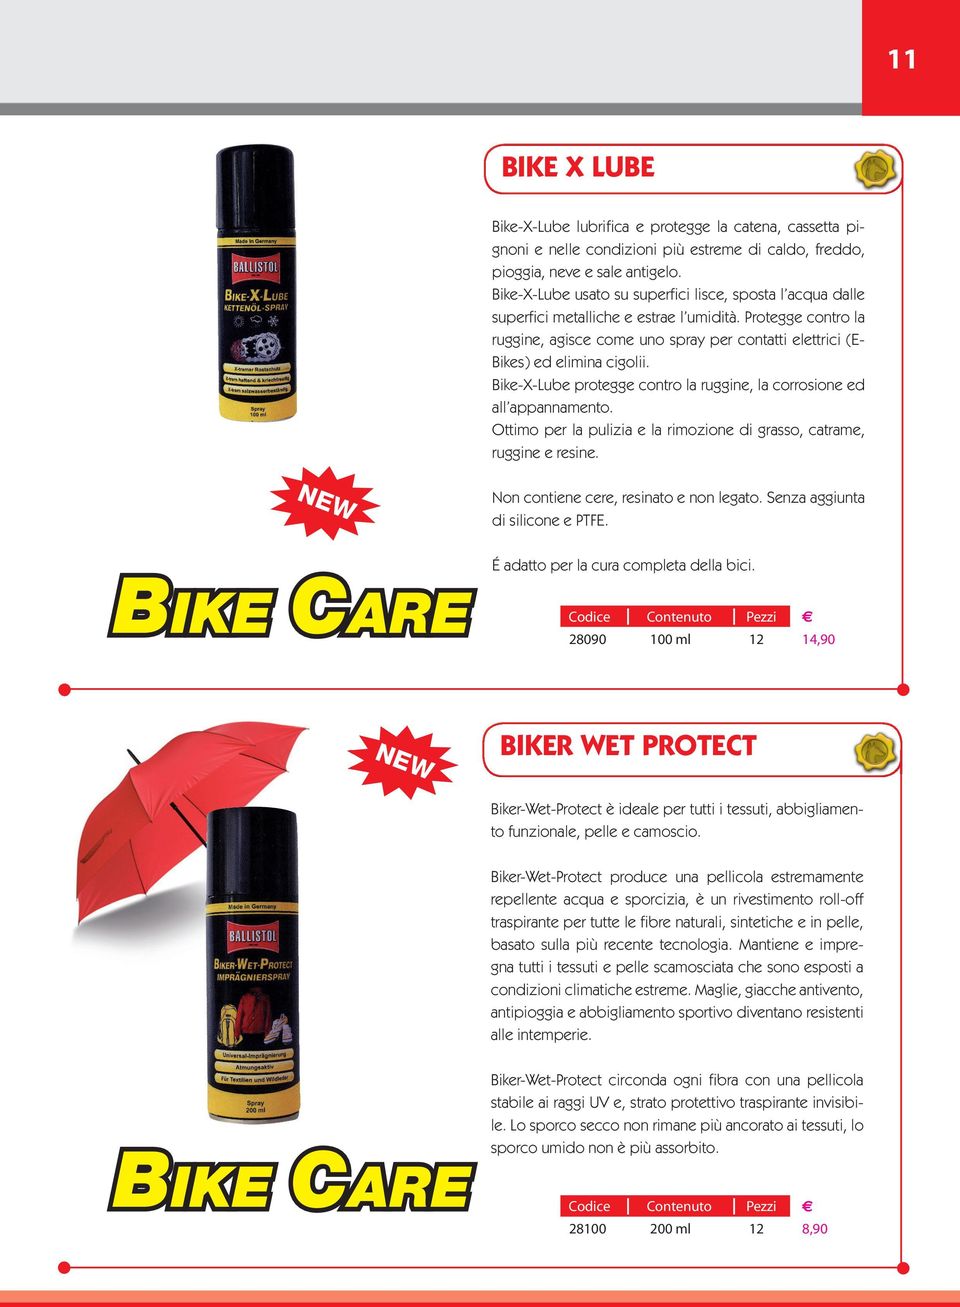 Protegge contro la ruggine, agisce come uno spray per contatti elettrici (E- Bikes) ed elimina cigolii. Bike-X-Lube protegge contro la ruggine, la corrosione ed all appannamento.